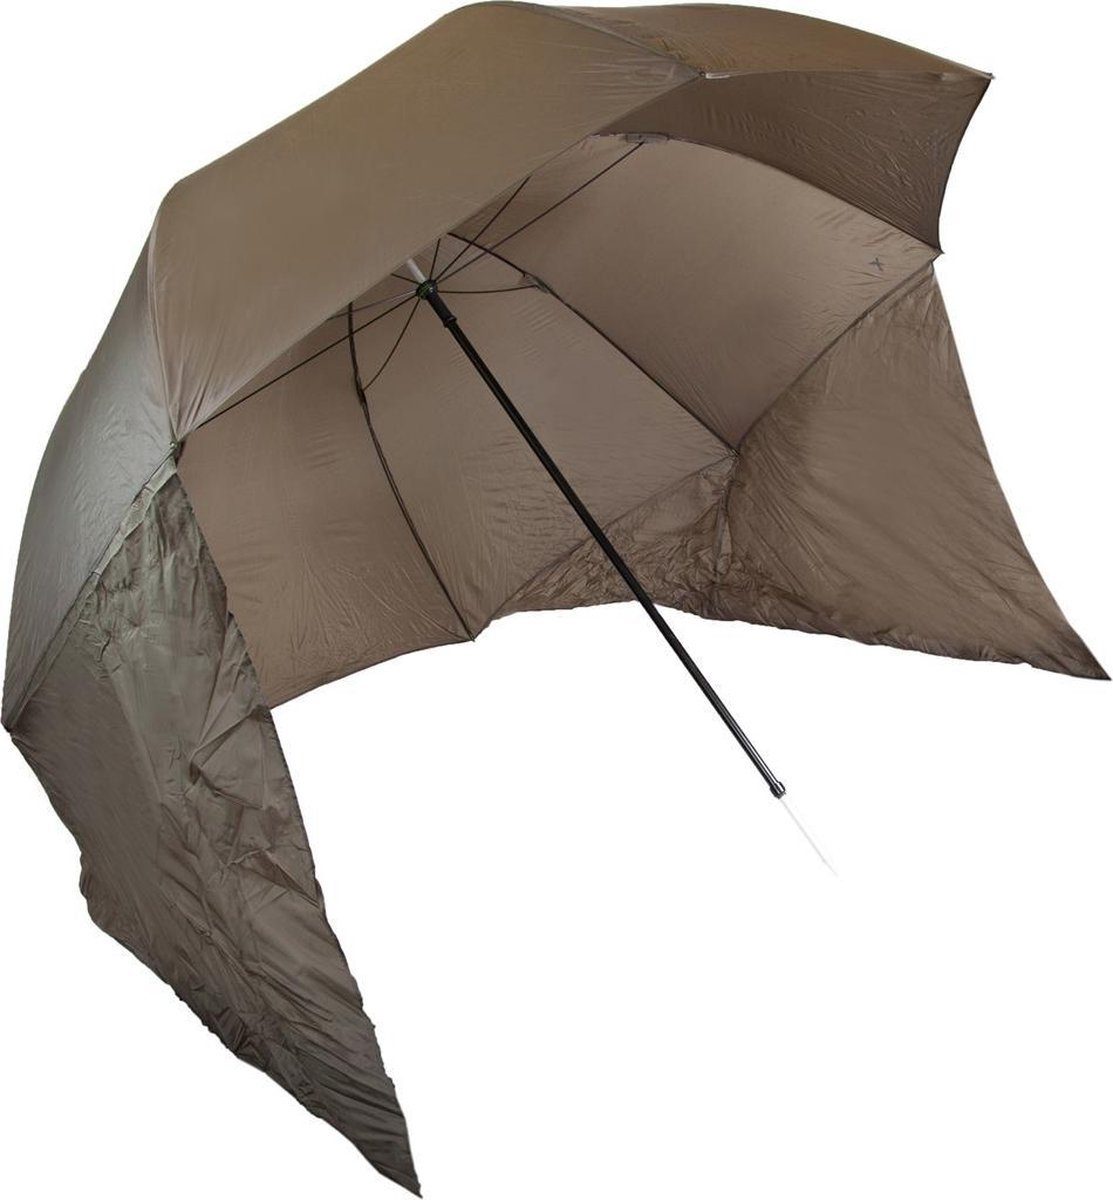 X2 Angelschirm Regenschirm für Angeln - 3 m Durchmesser, Regenschutz, Sonnenschutz und Windschutz Schirm für Angler